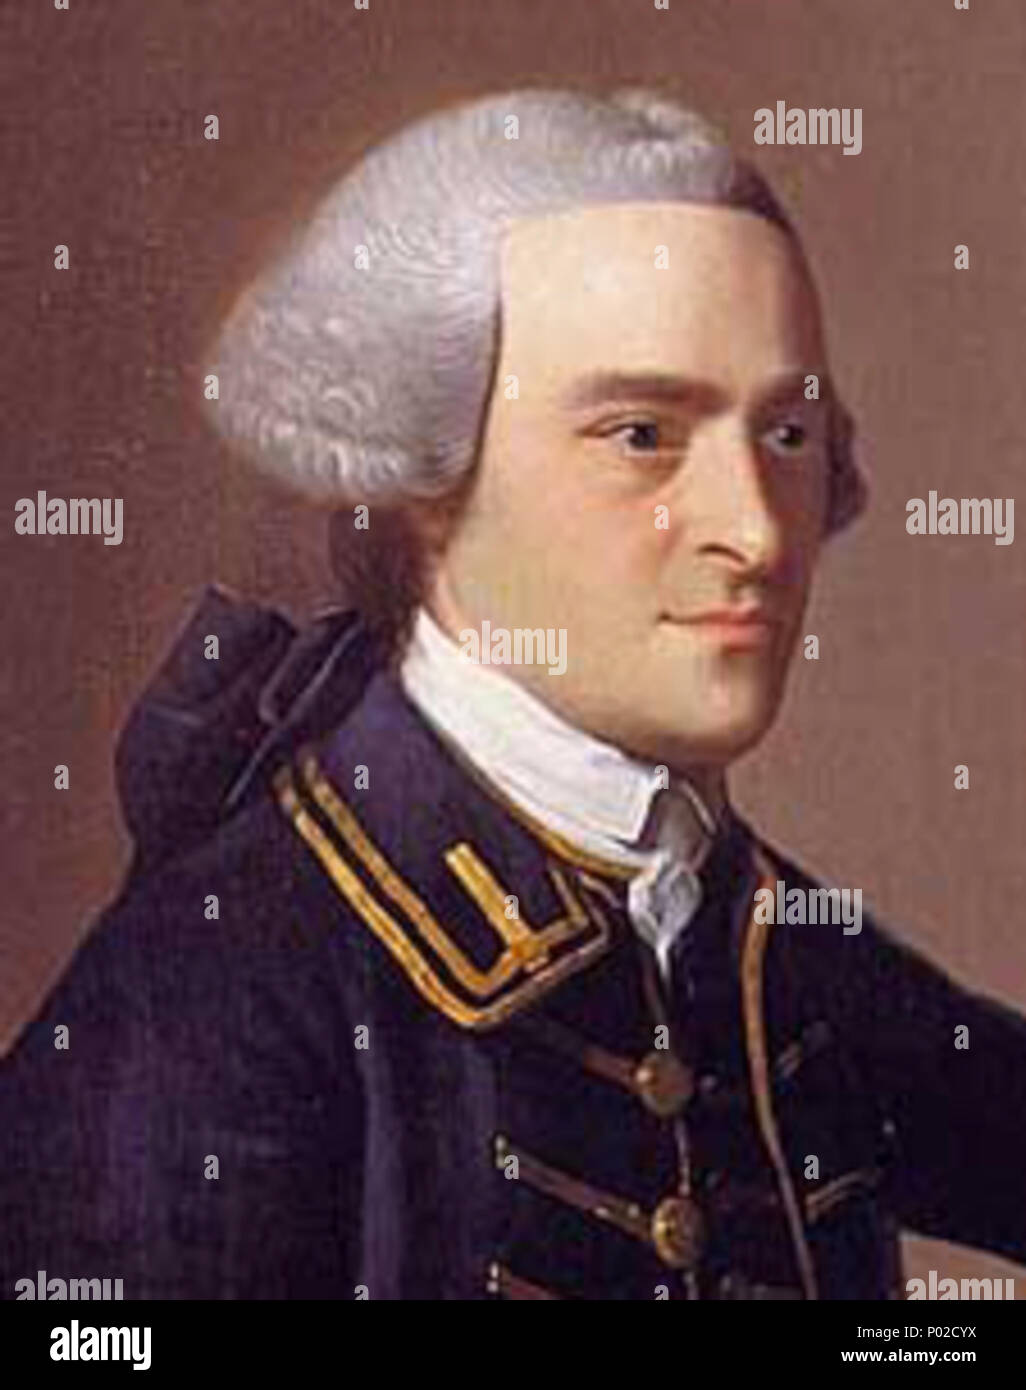 Exquisito Mala suerte Hormiga Inglés: un retrato de John Hancock (23 de enero de 1737 [O.S. 12 de enero  de 1736] - 8 de octubre de 1793), uno de los firmantes de la Declaración de